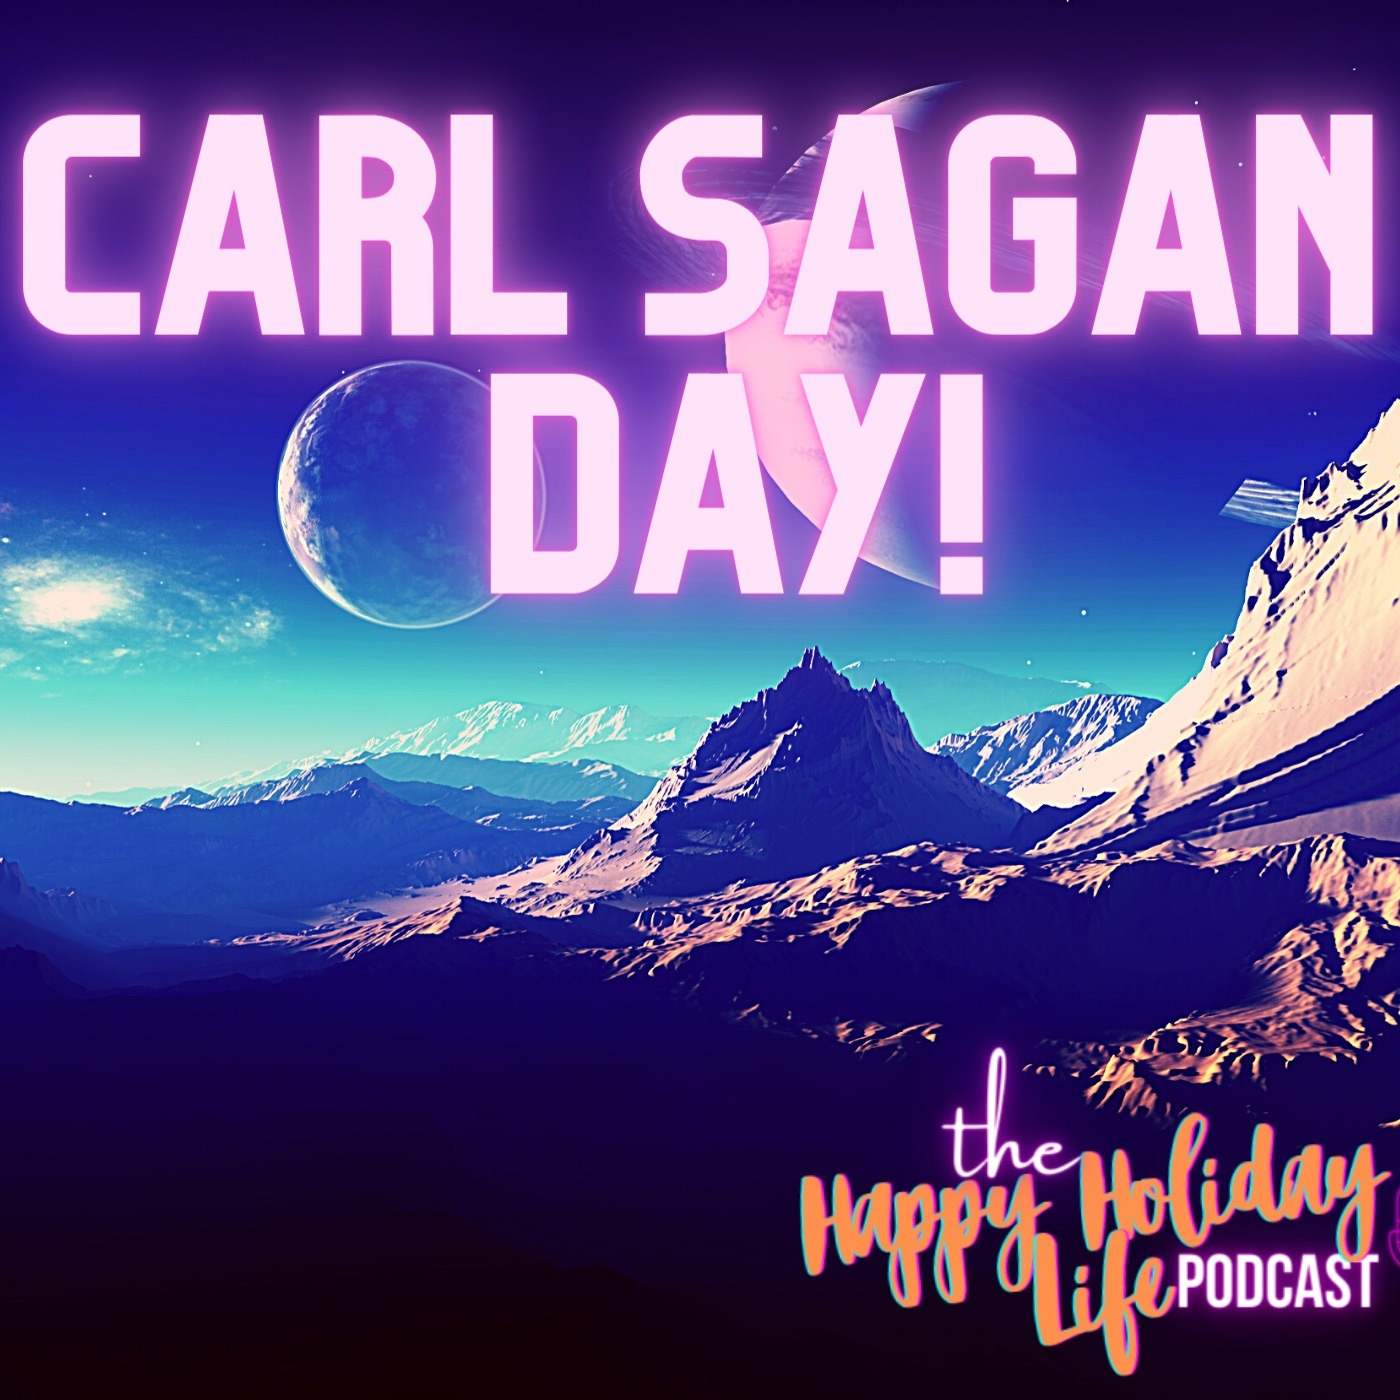 Episode #023 Carl Sagan Day Image